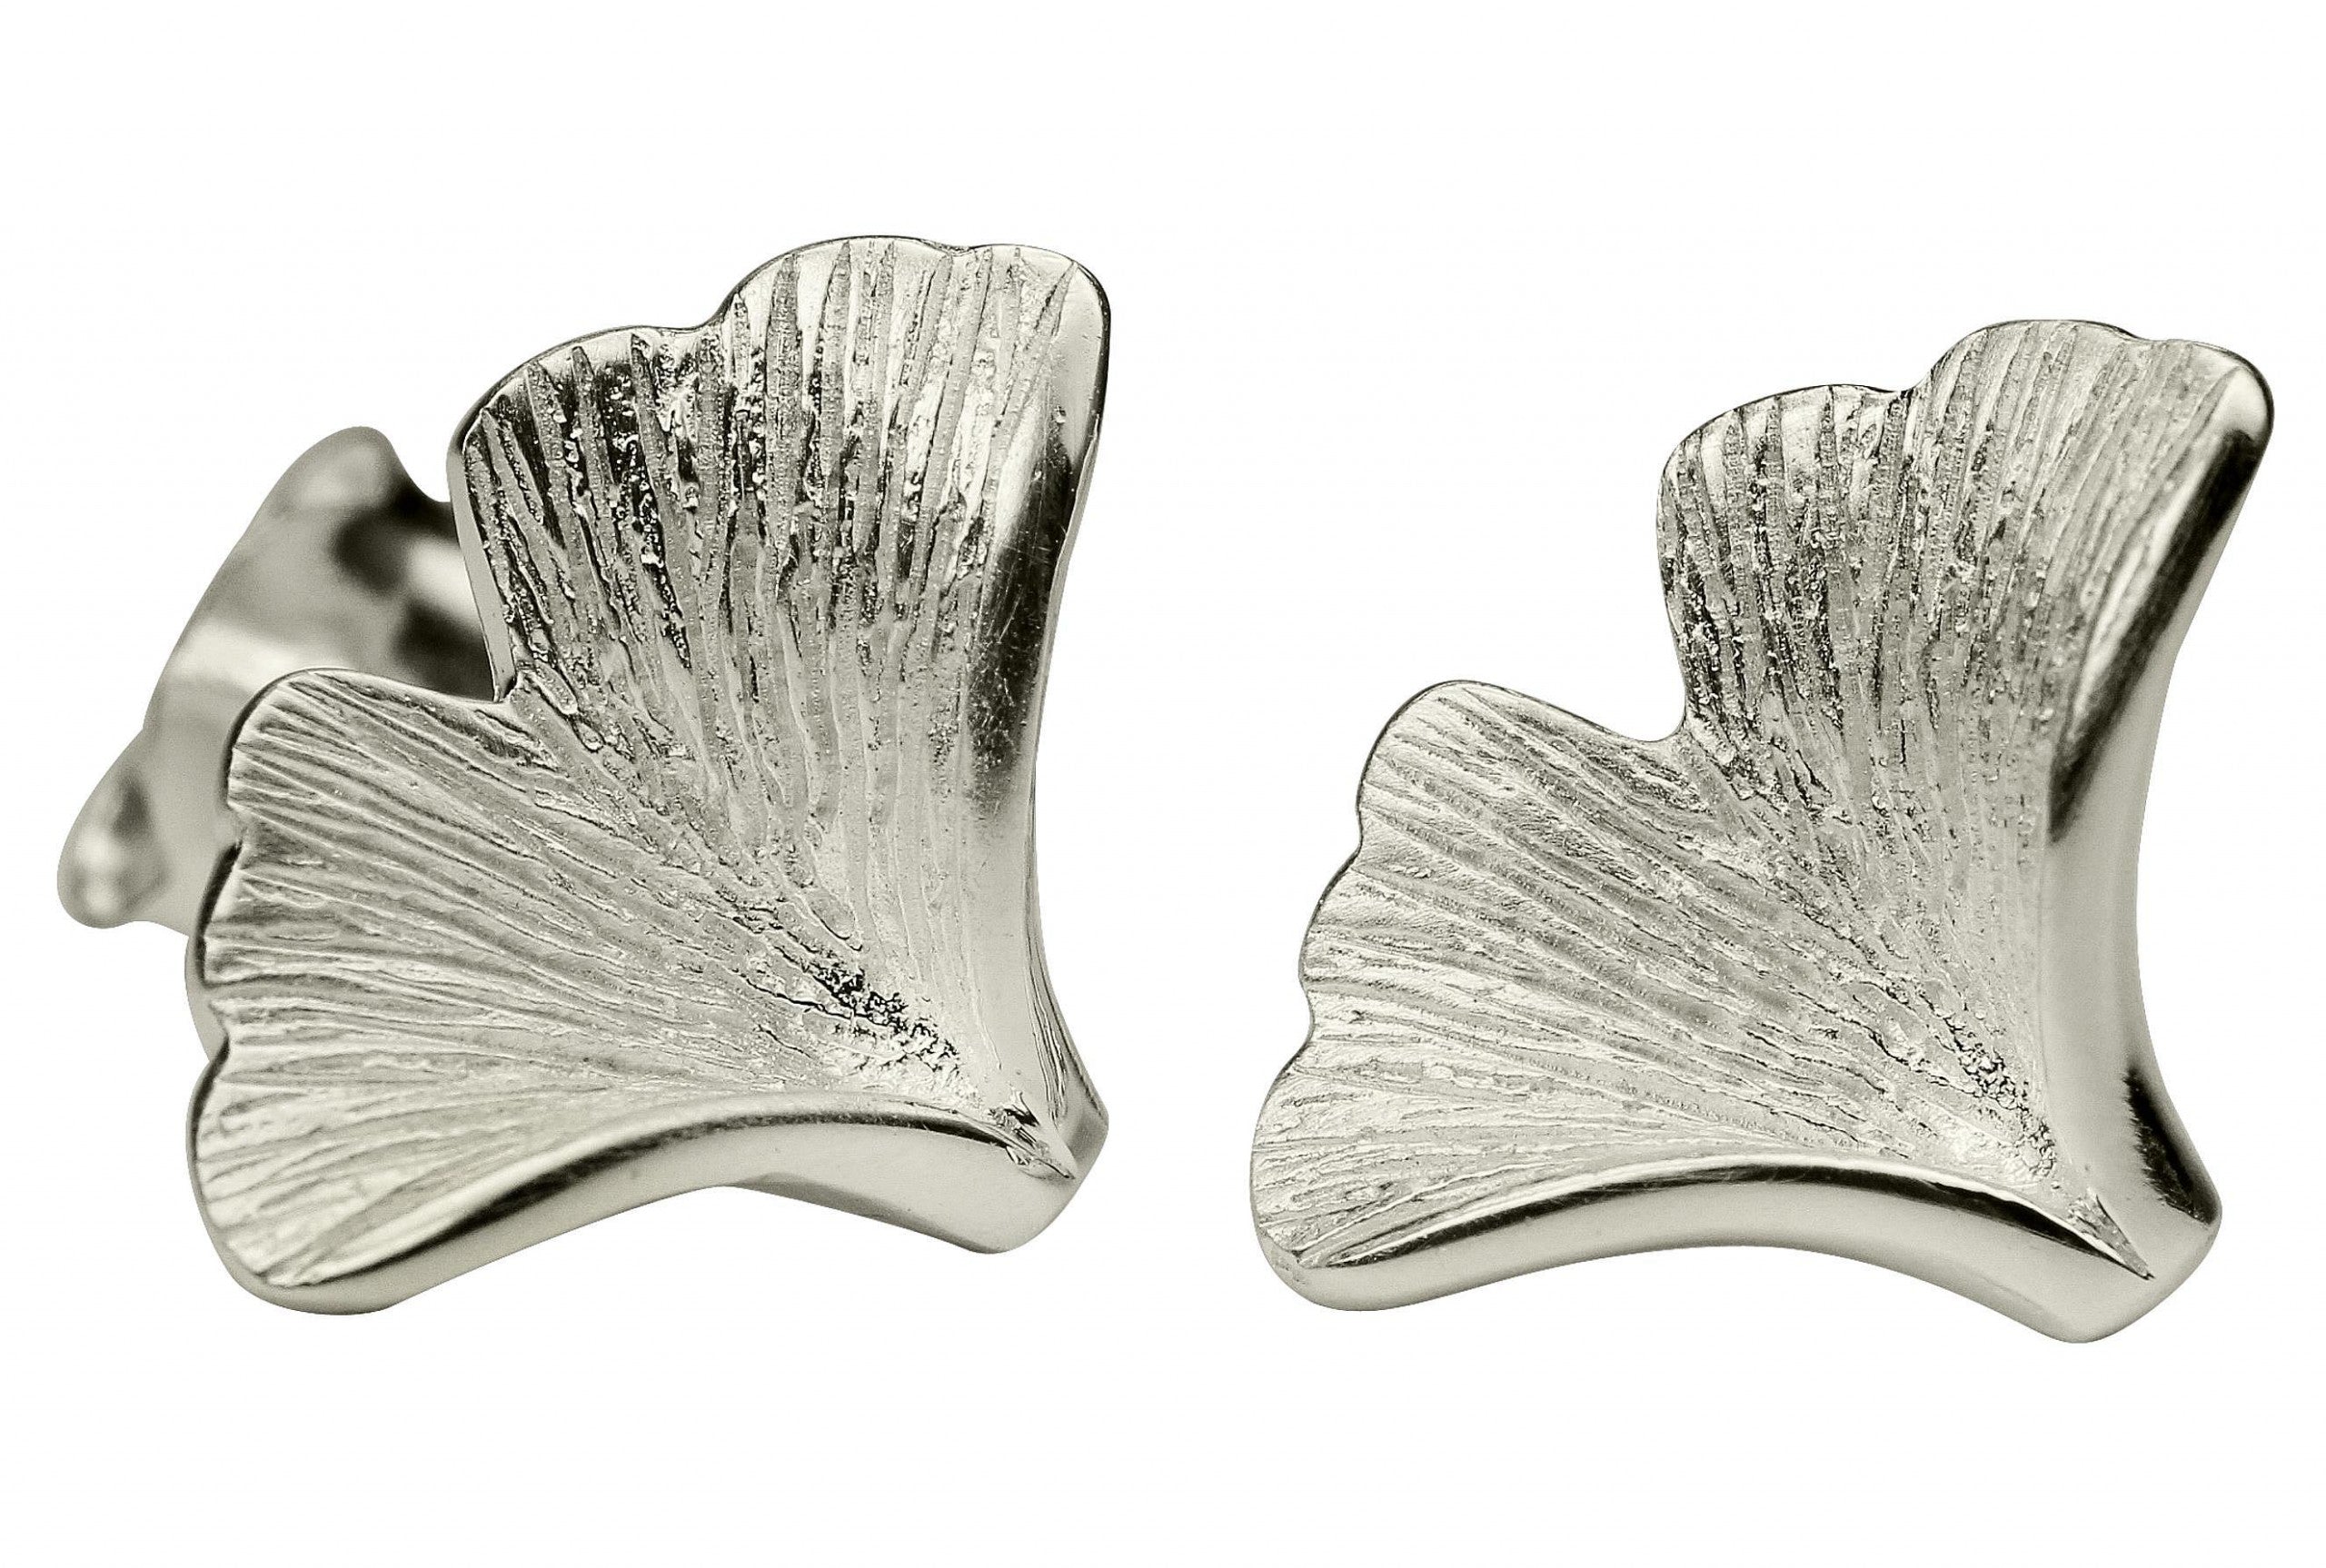 Ohrstecker aus Silber für Damen in Form eines Gingko Blattes mit fein mattierter Oberfläche.